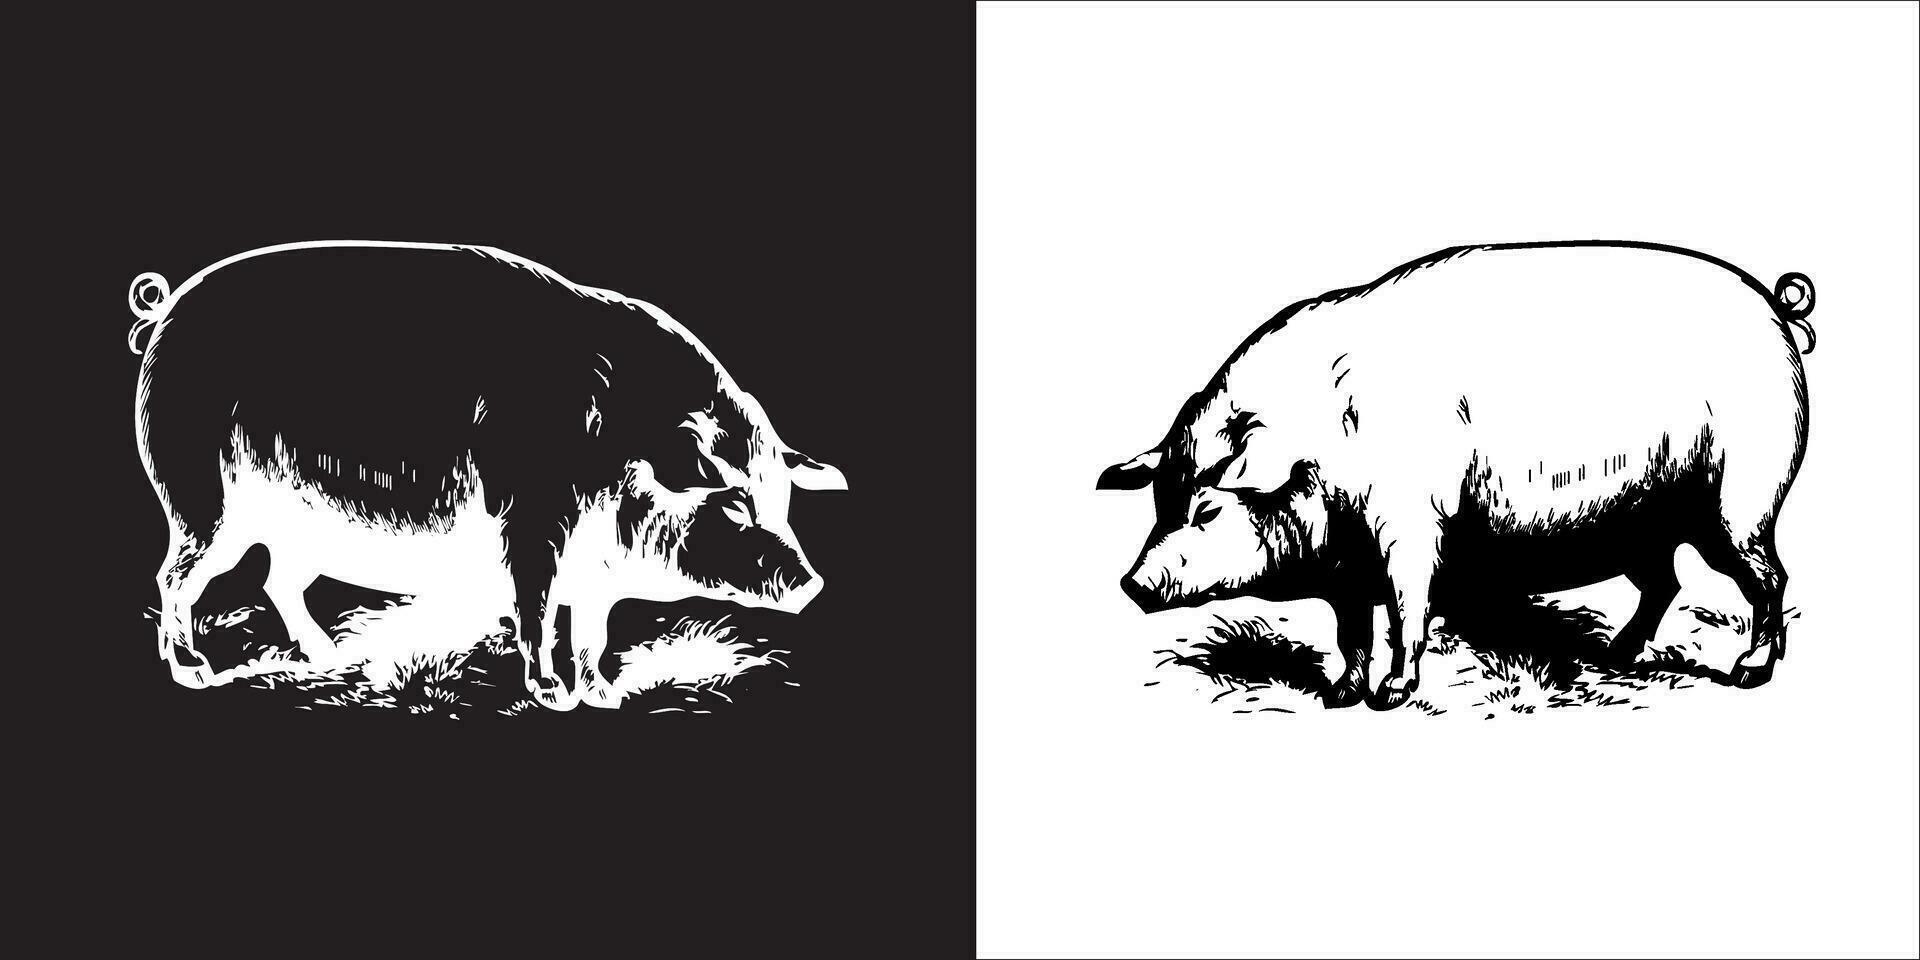 Illustration Vektor Grafik von Schwein Symbol